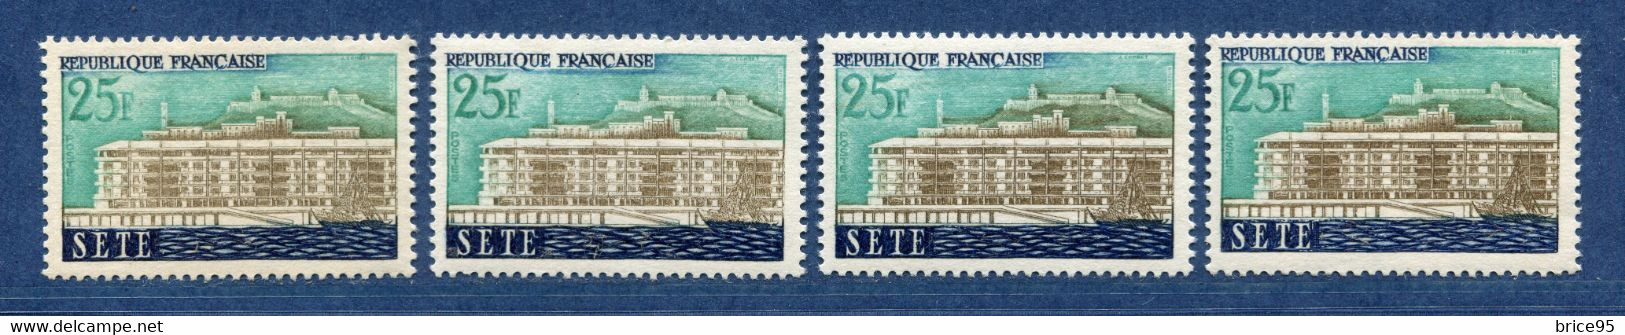 ⭐ France - Variété - YT N° 1155 - Couleurs - Pétouille - Neuf Sans Charnière - 1958 ⭐ - Nuevos